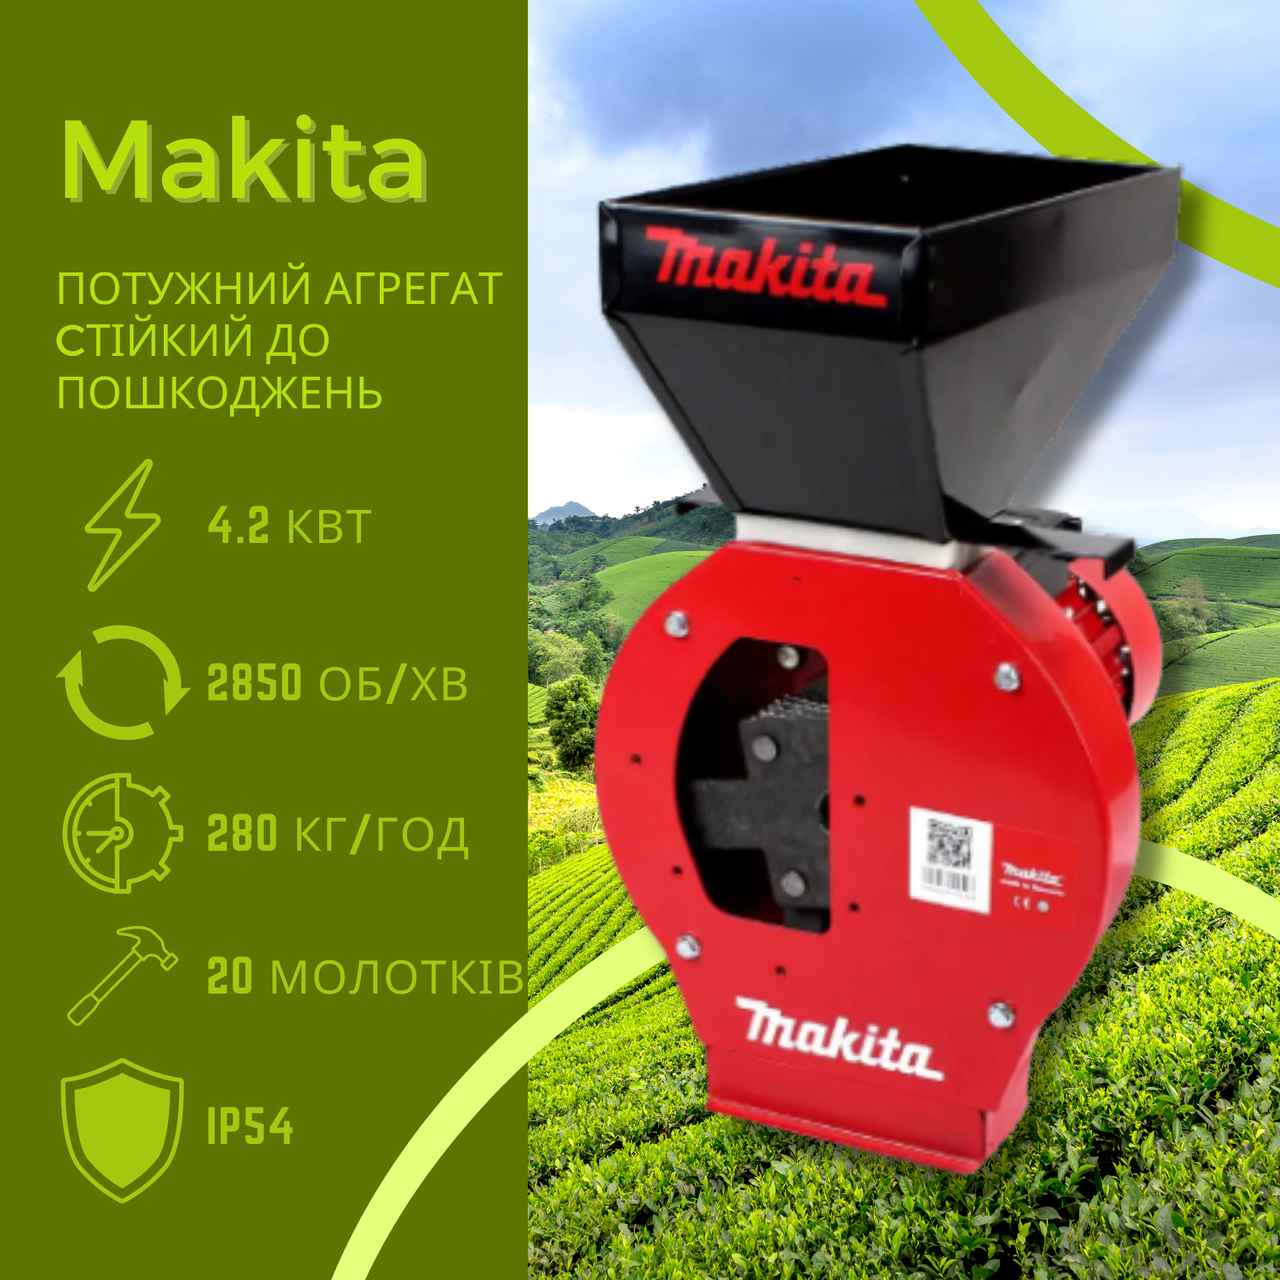 Індустріальна зернодробилка для зерна та качанів кукурудзи Makita EFS 4200 (4.2 кВт, 280 кг/год)